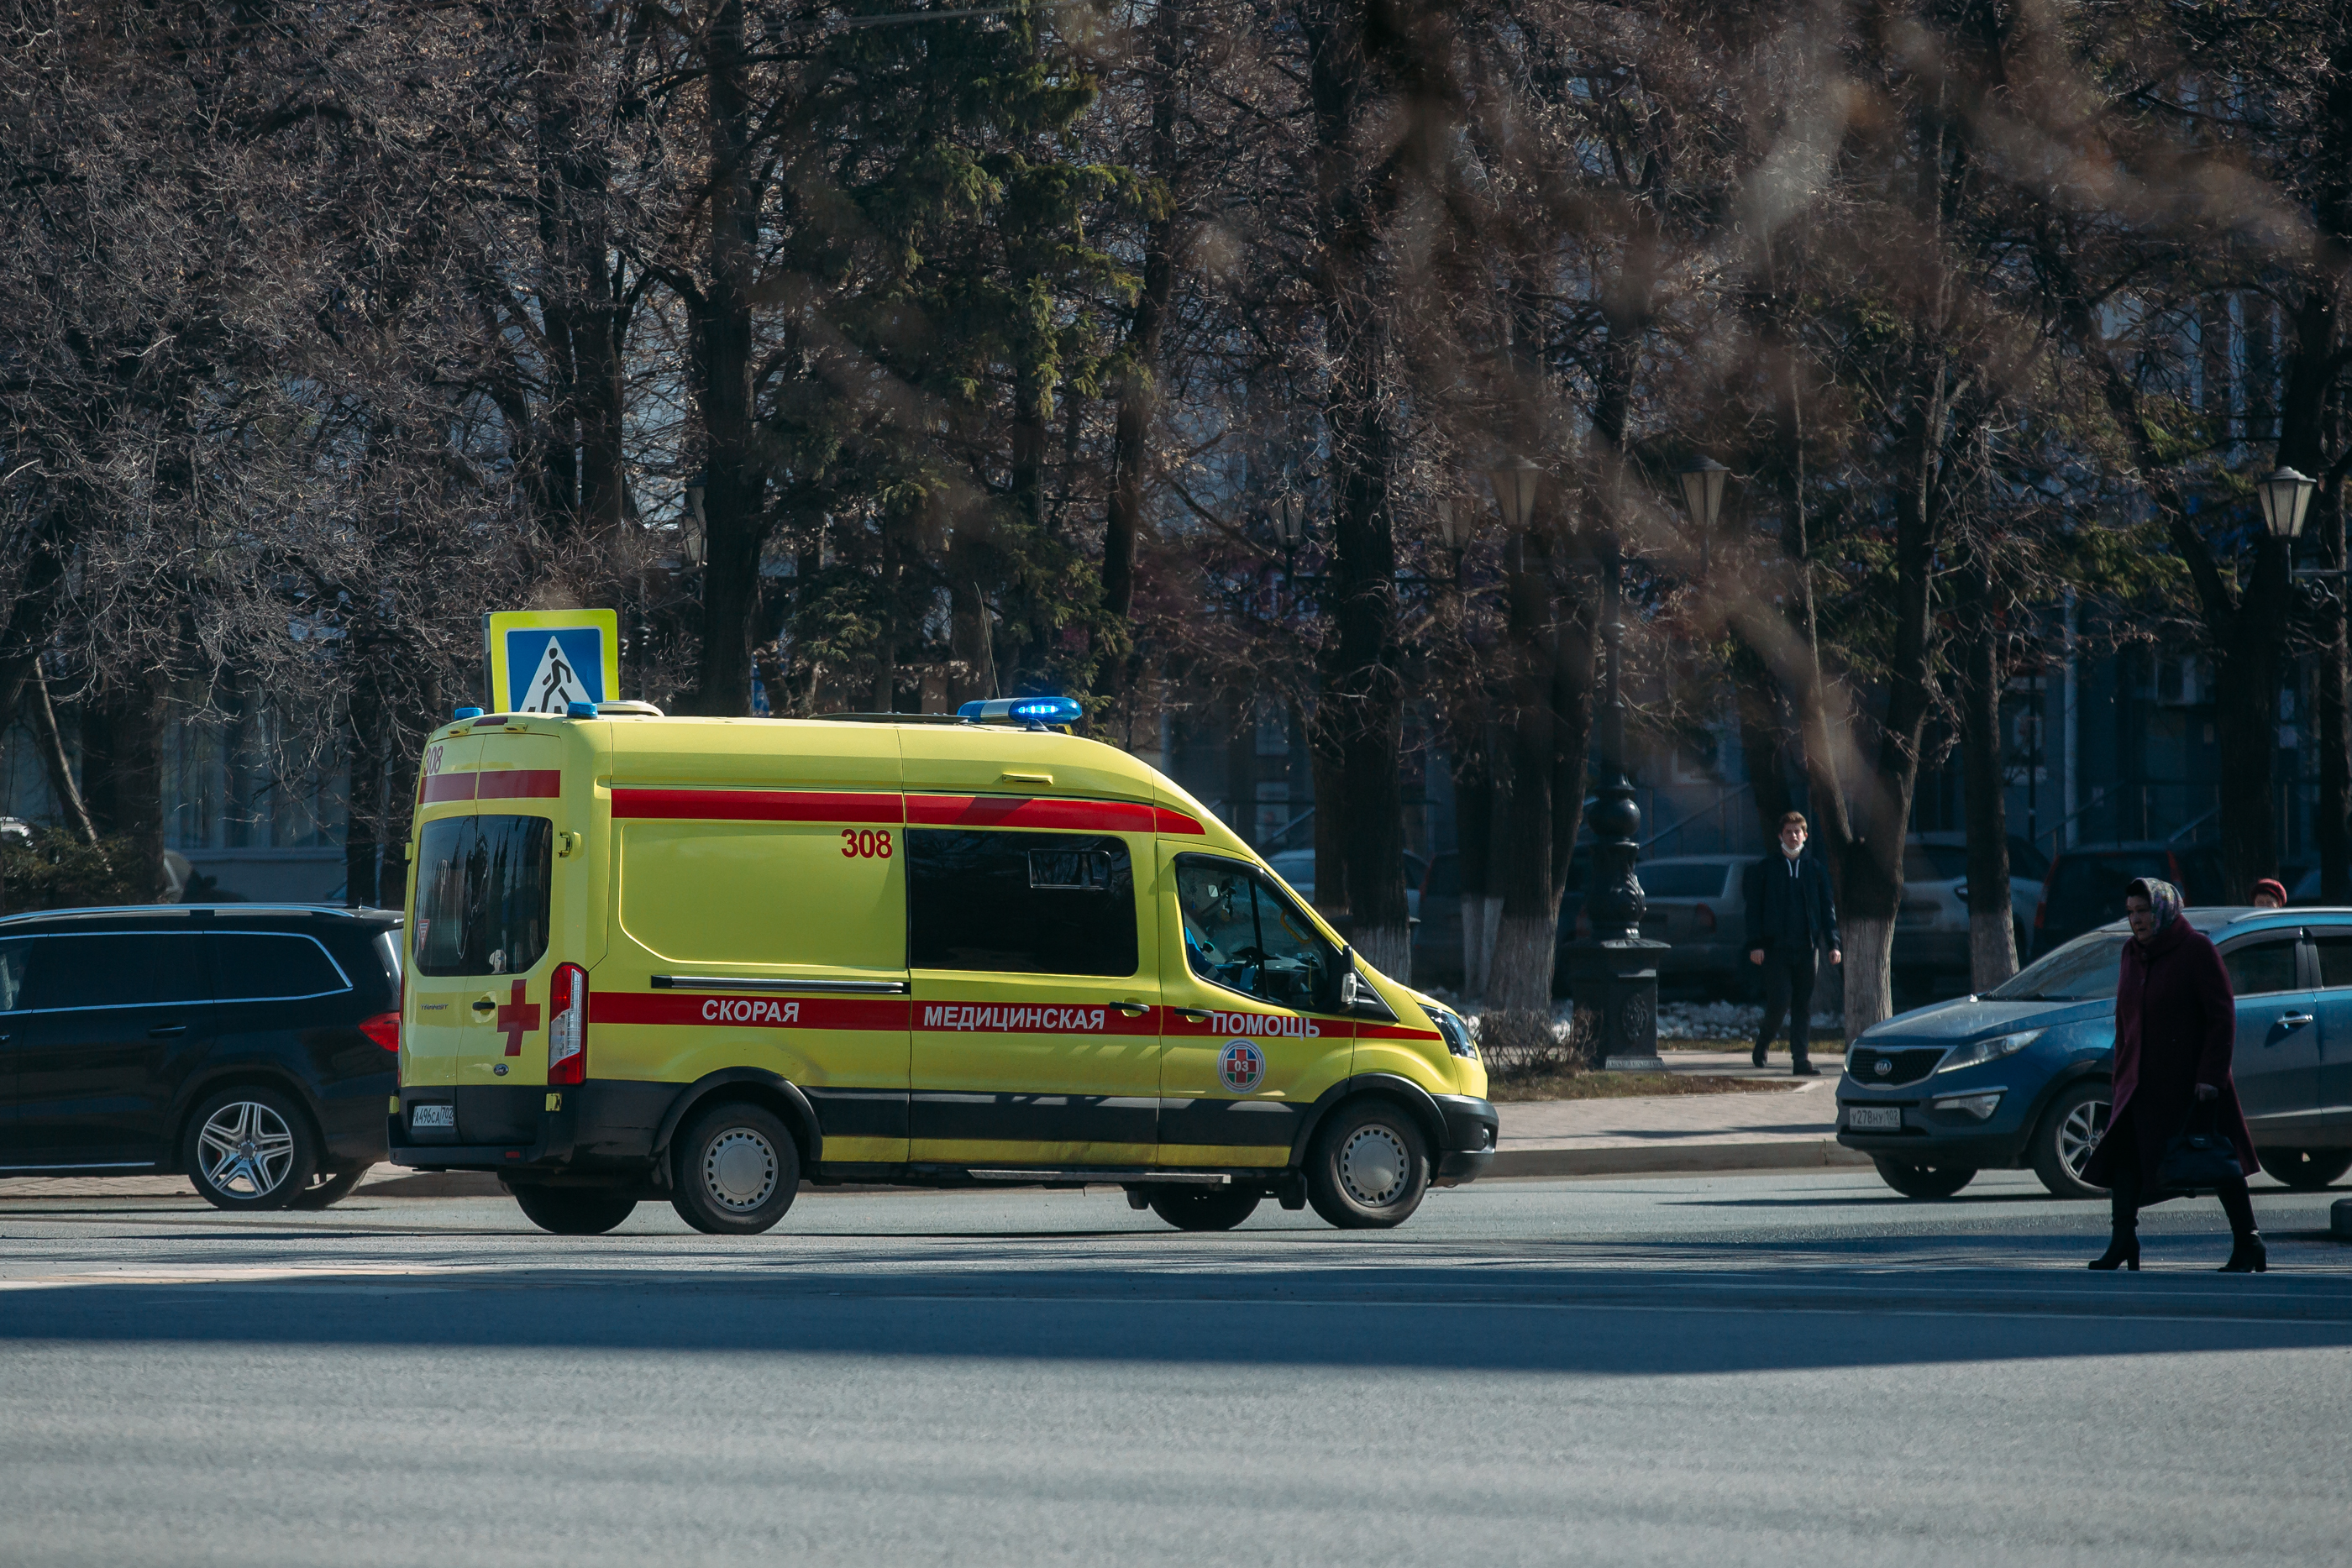 Переломы и шок: известно состояние парня, упавшего с высоты на припаркованное авто в Башкирии